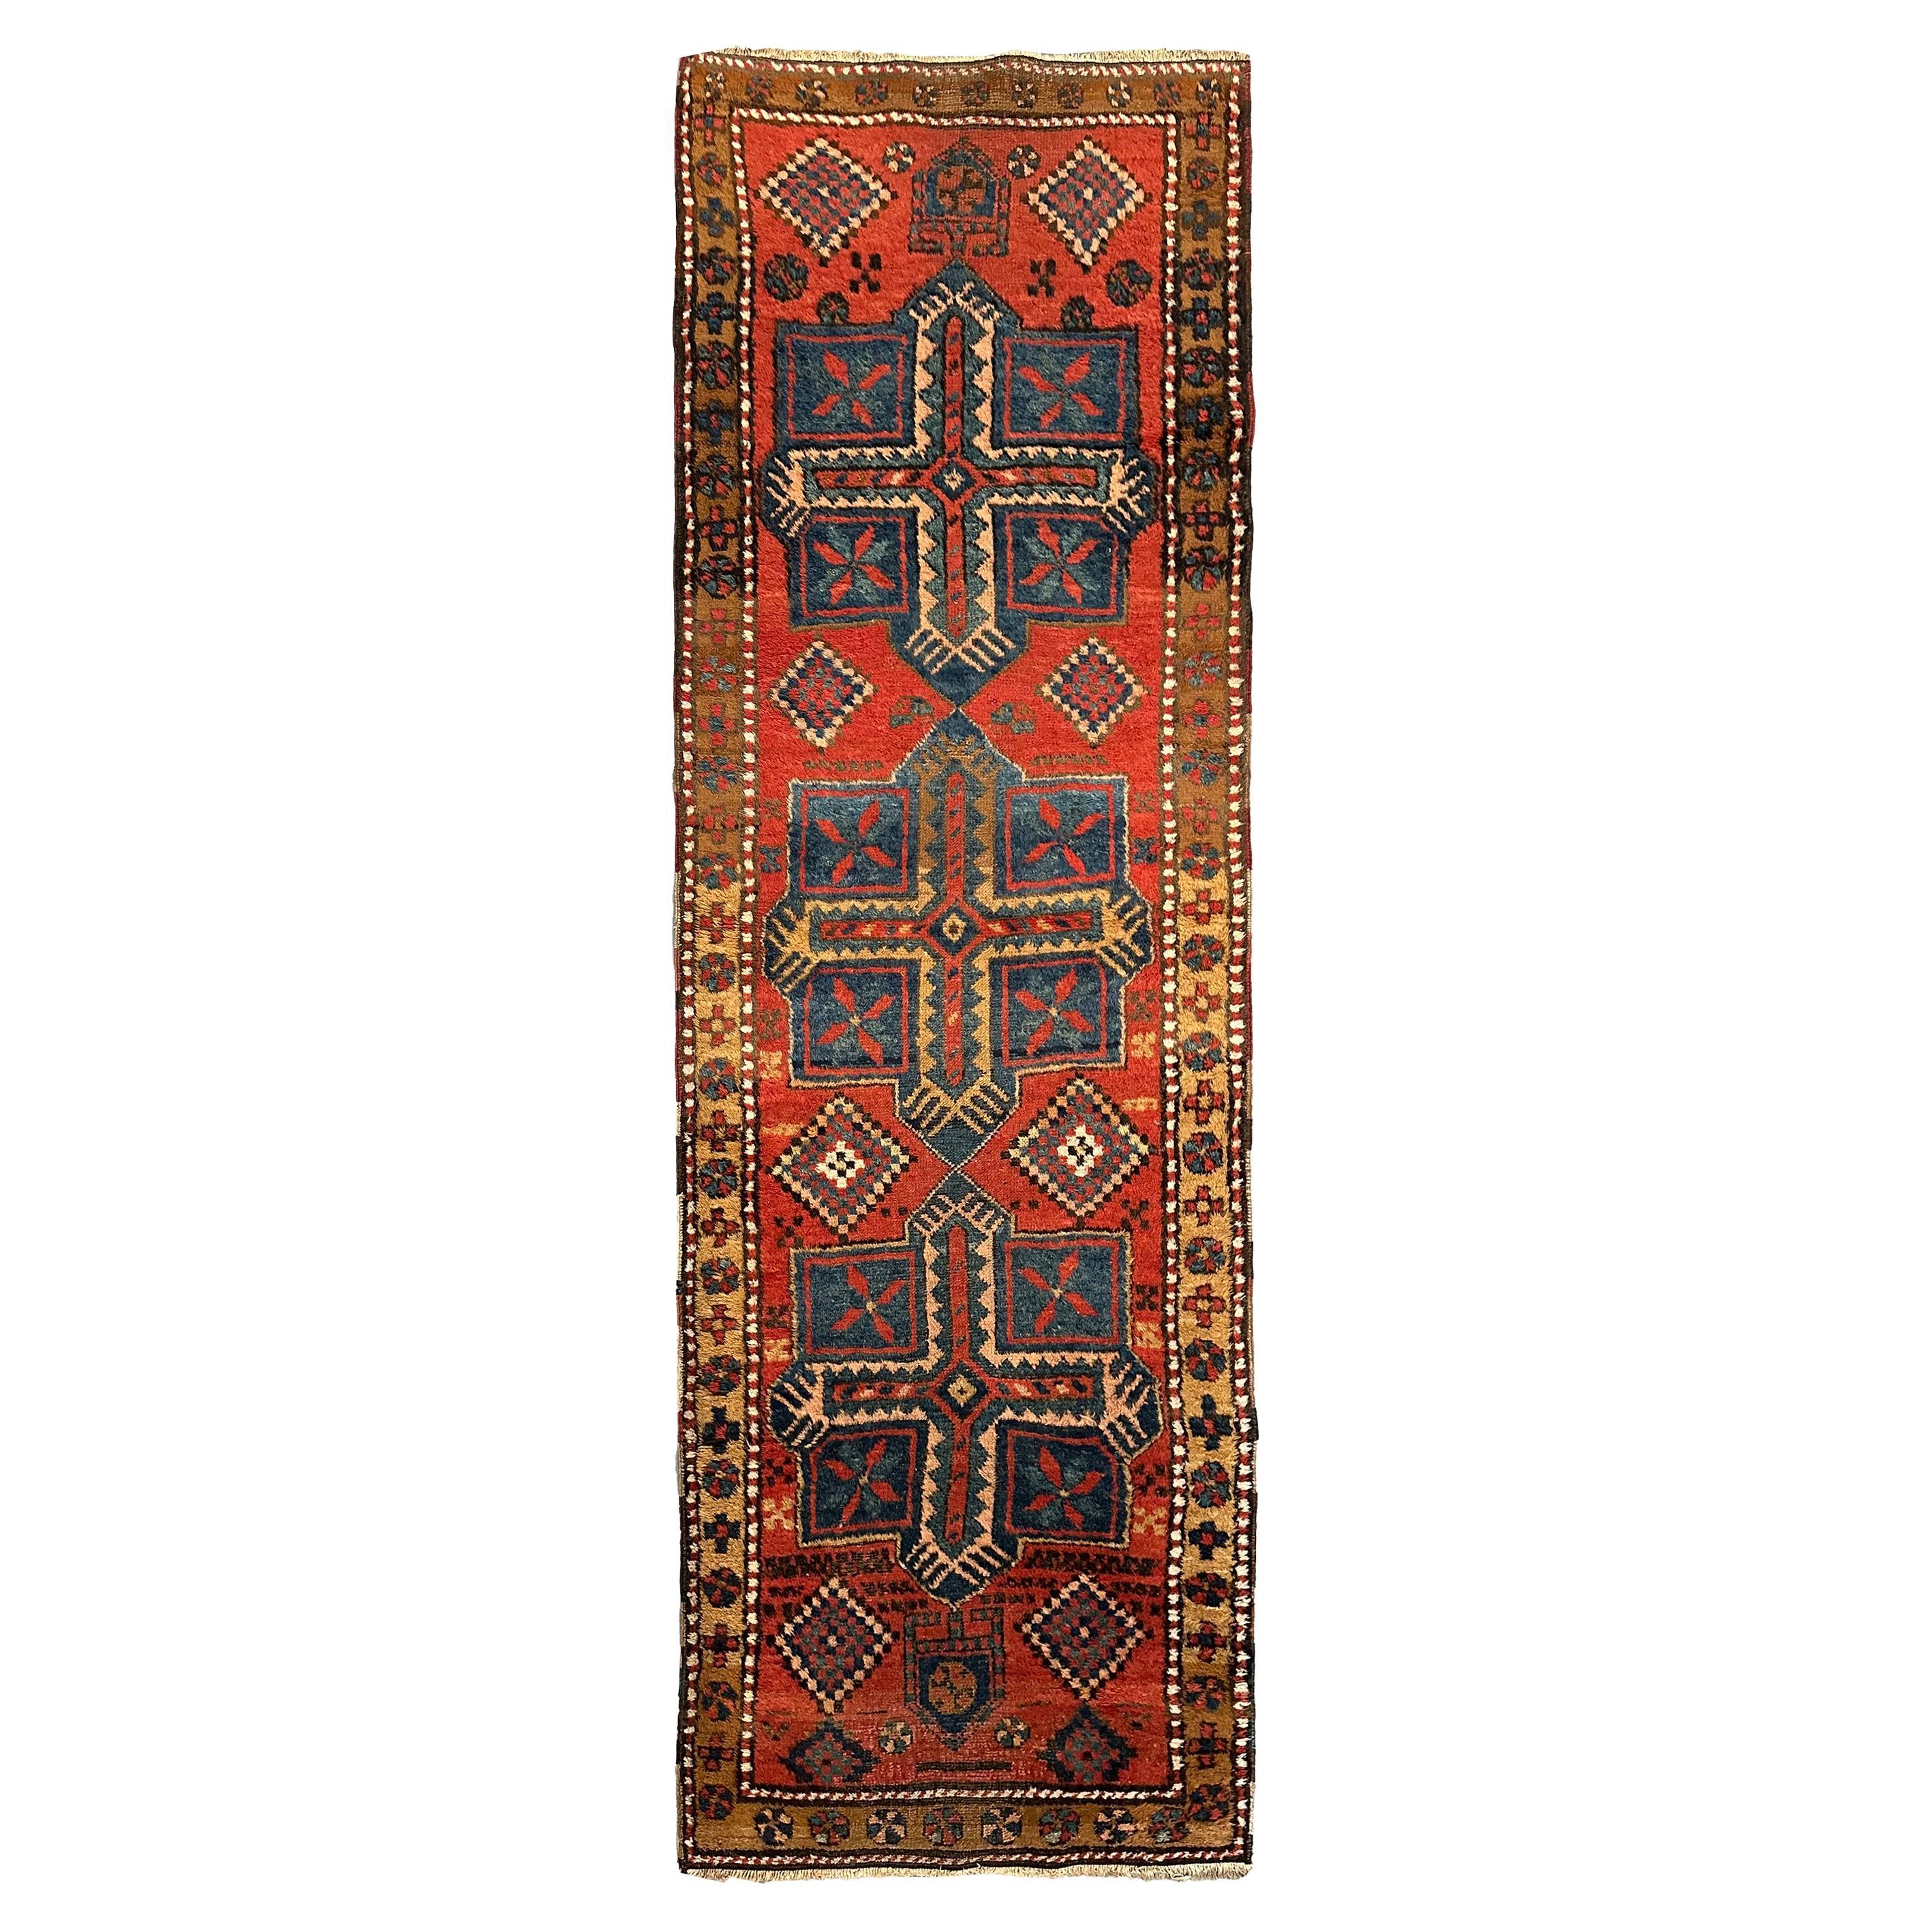 Antique Geometric Tribal Rug Handmade Runner Rug 1900 89cm x 262cm 3x9ft For Sale